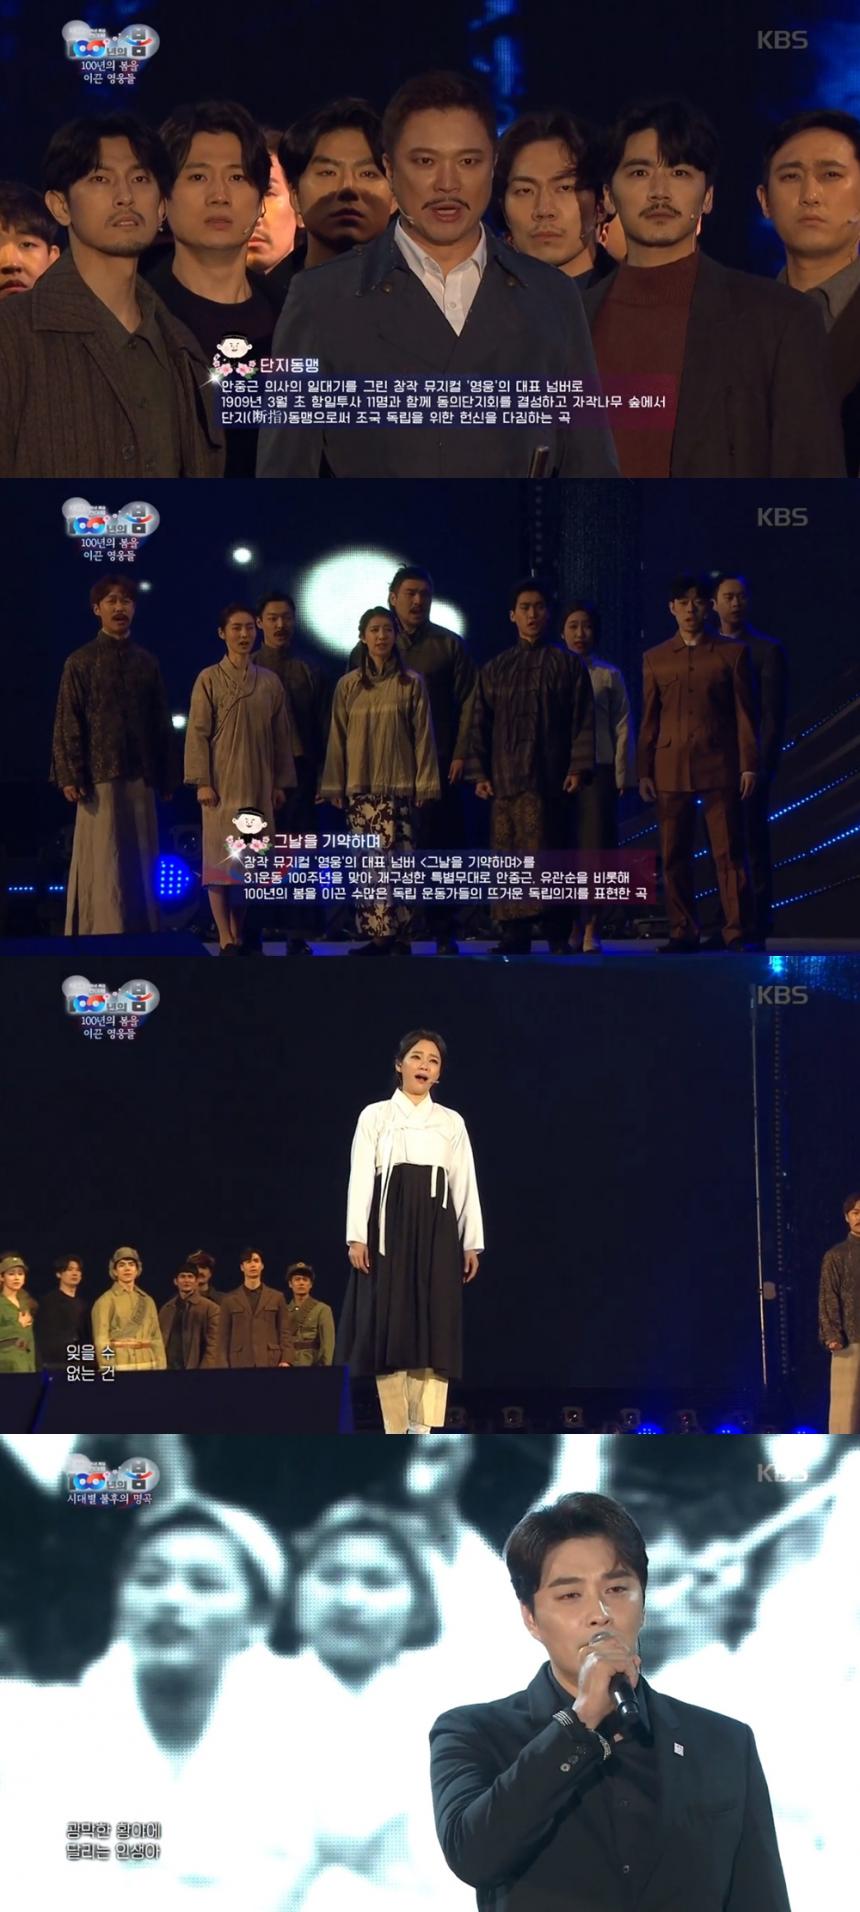 KBS2 3.1운동 100주년 특집 전야제 ‘100년의 봄’ 방송 캡처